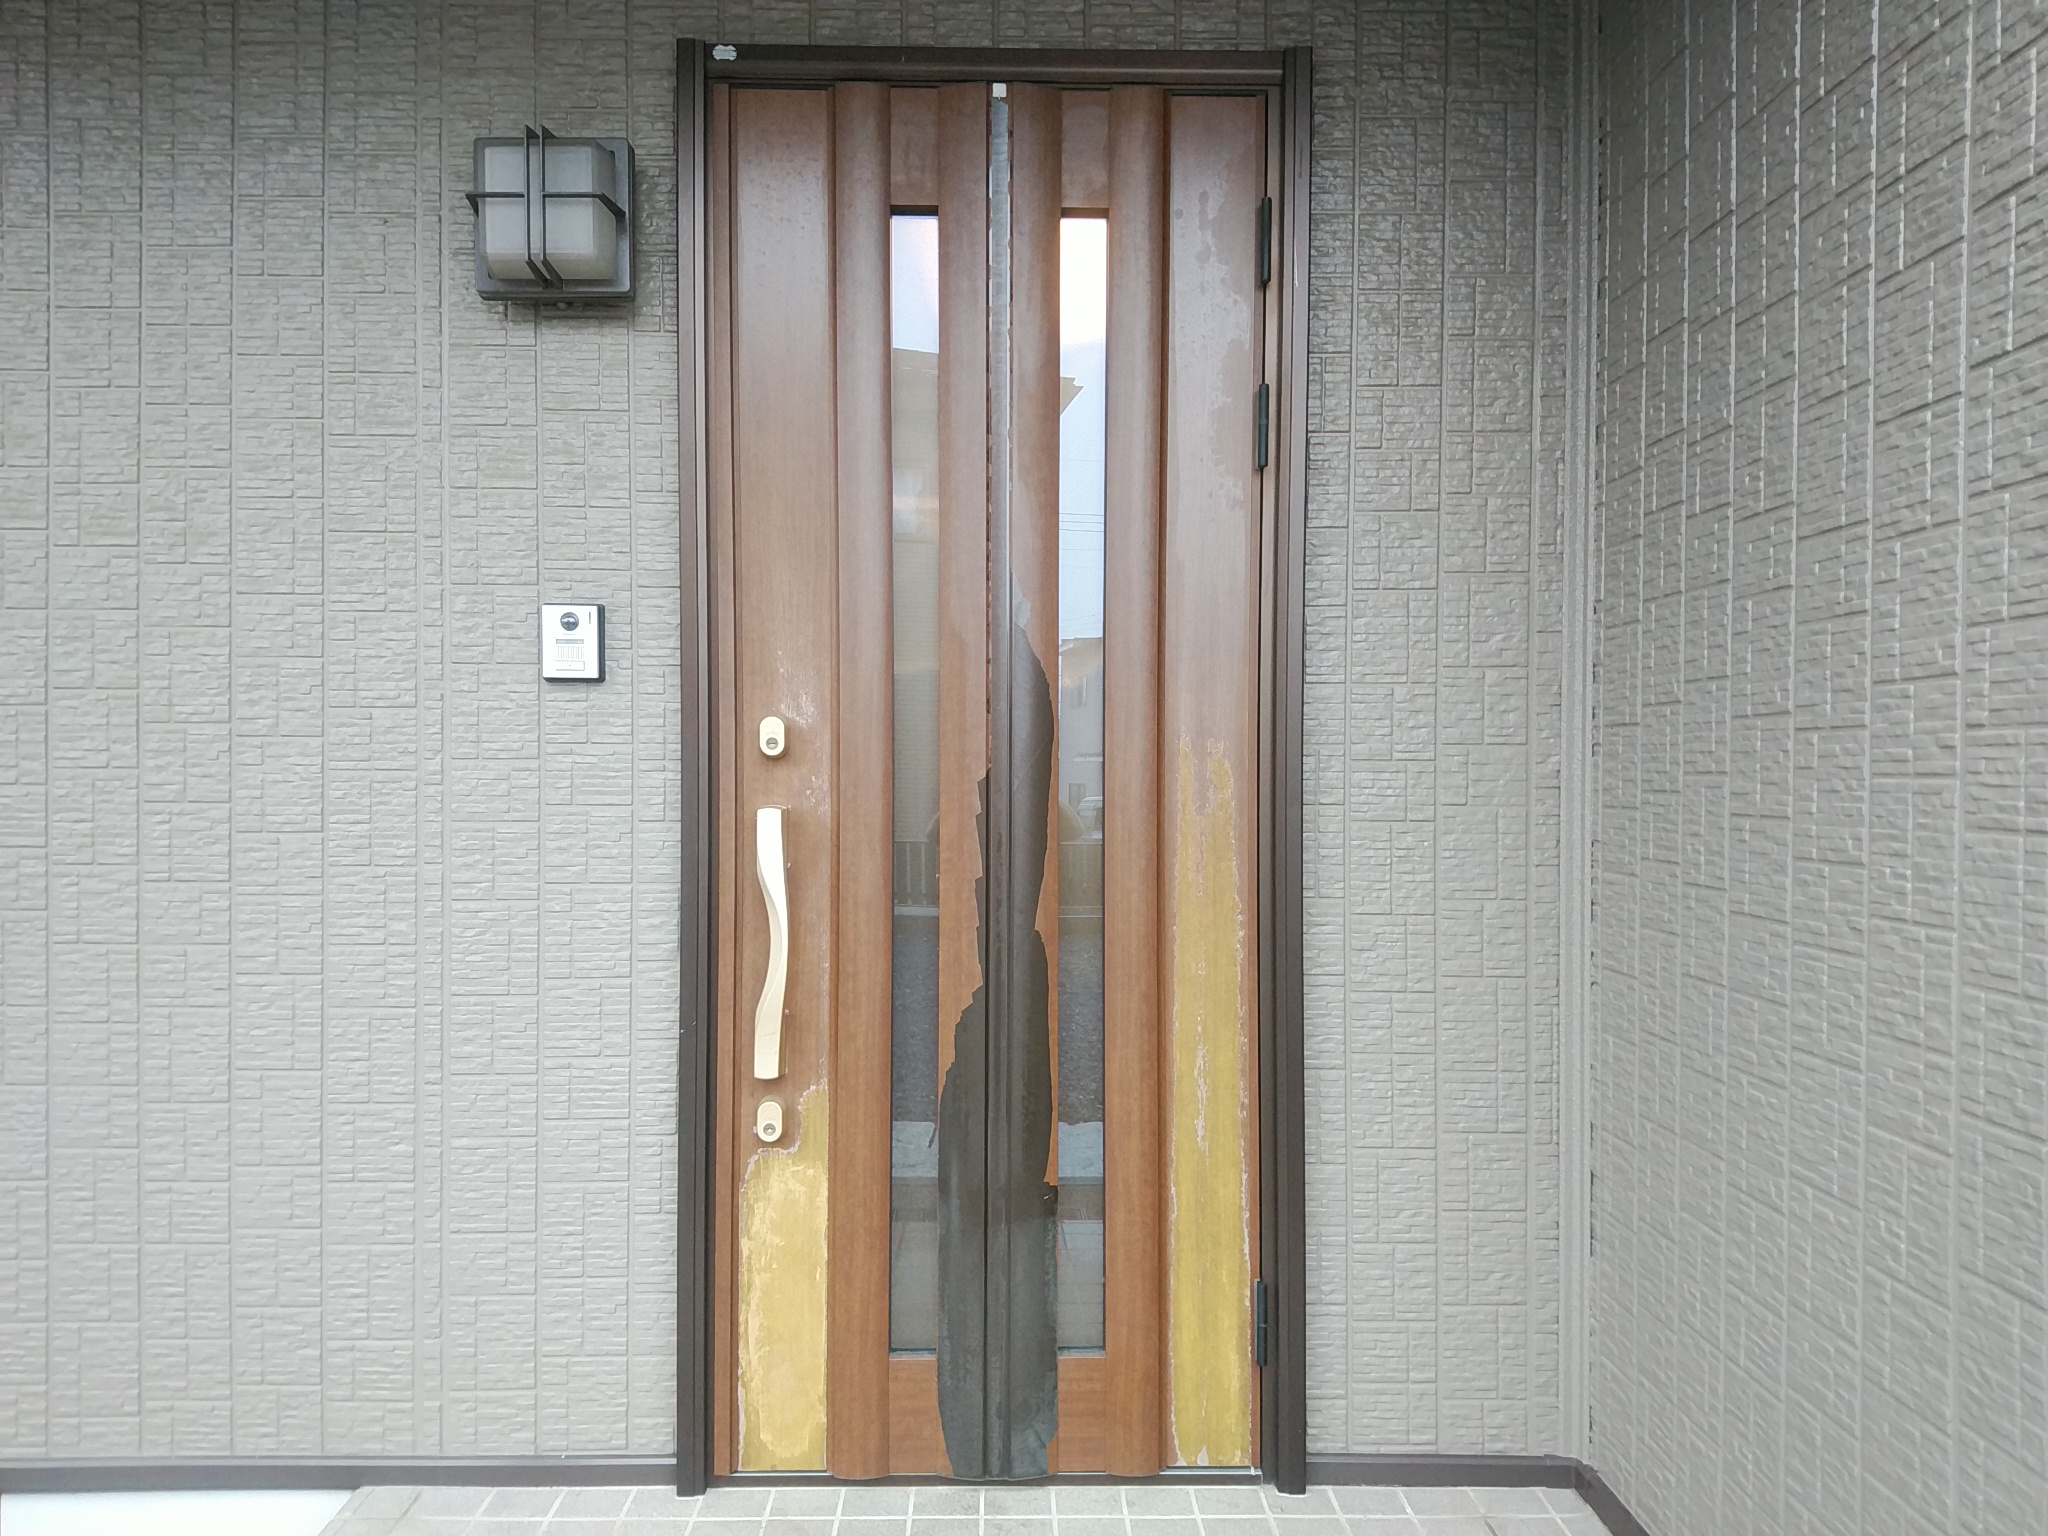 セキスイハイムの玄関ドアの木目シートが剝がれていました Ykkapドアリモn05t 玄関ドアのリフォームなら玄関ドアマイスターへお任せください